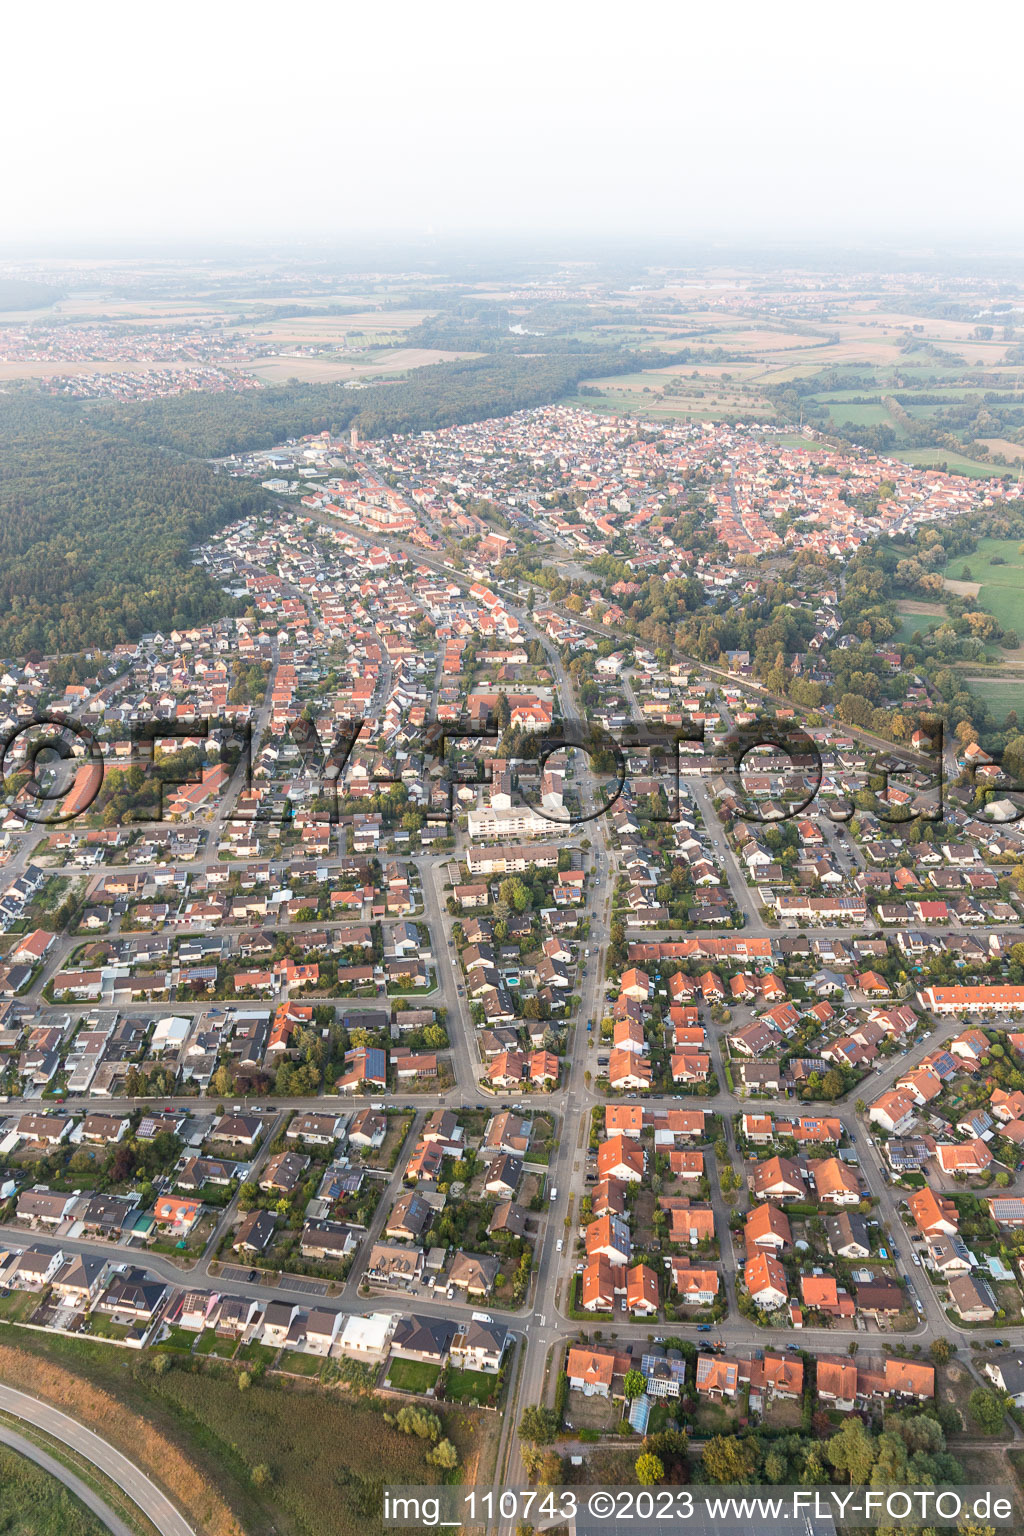 Jockgrim dans le département Rhénanie-Palatinat, Allemagne depuis l'avion